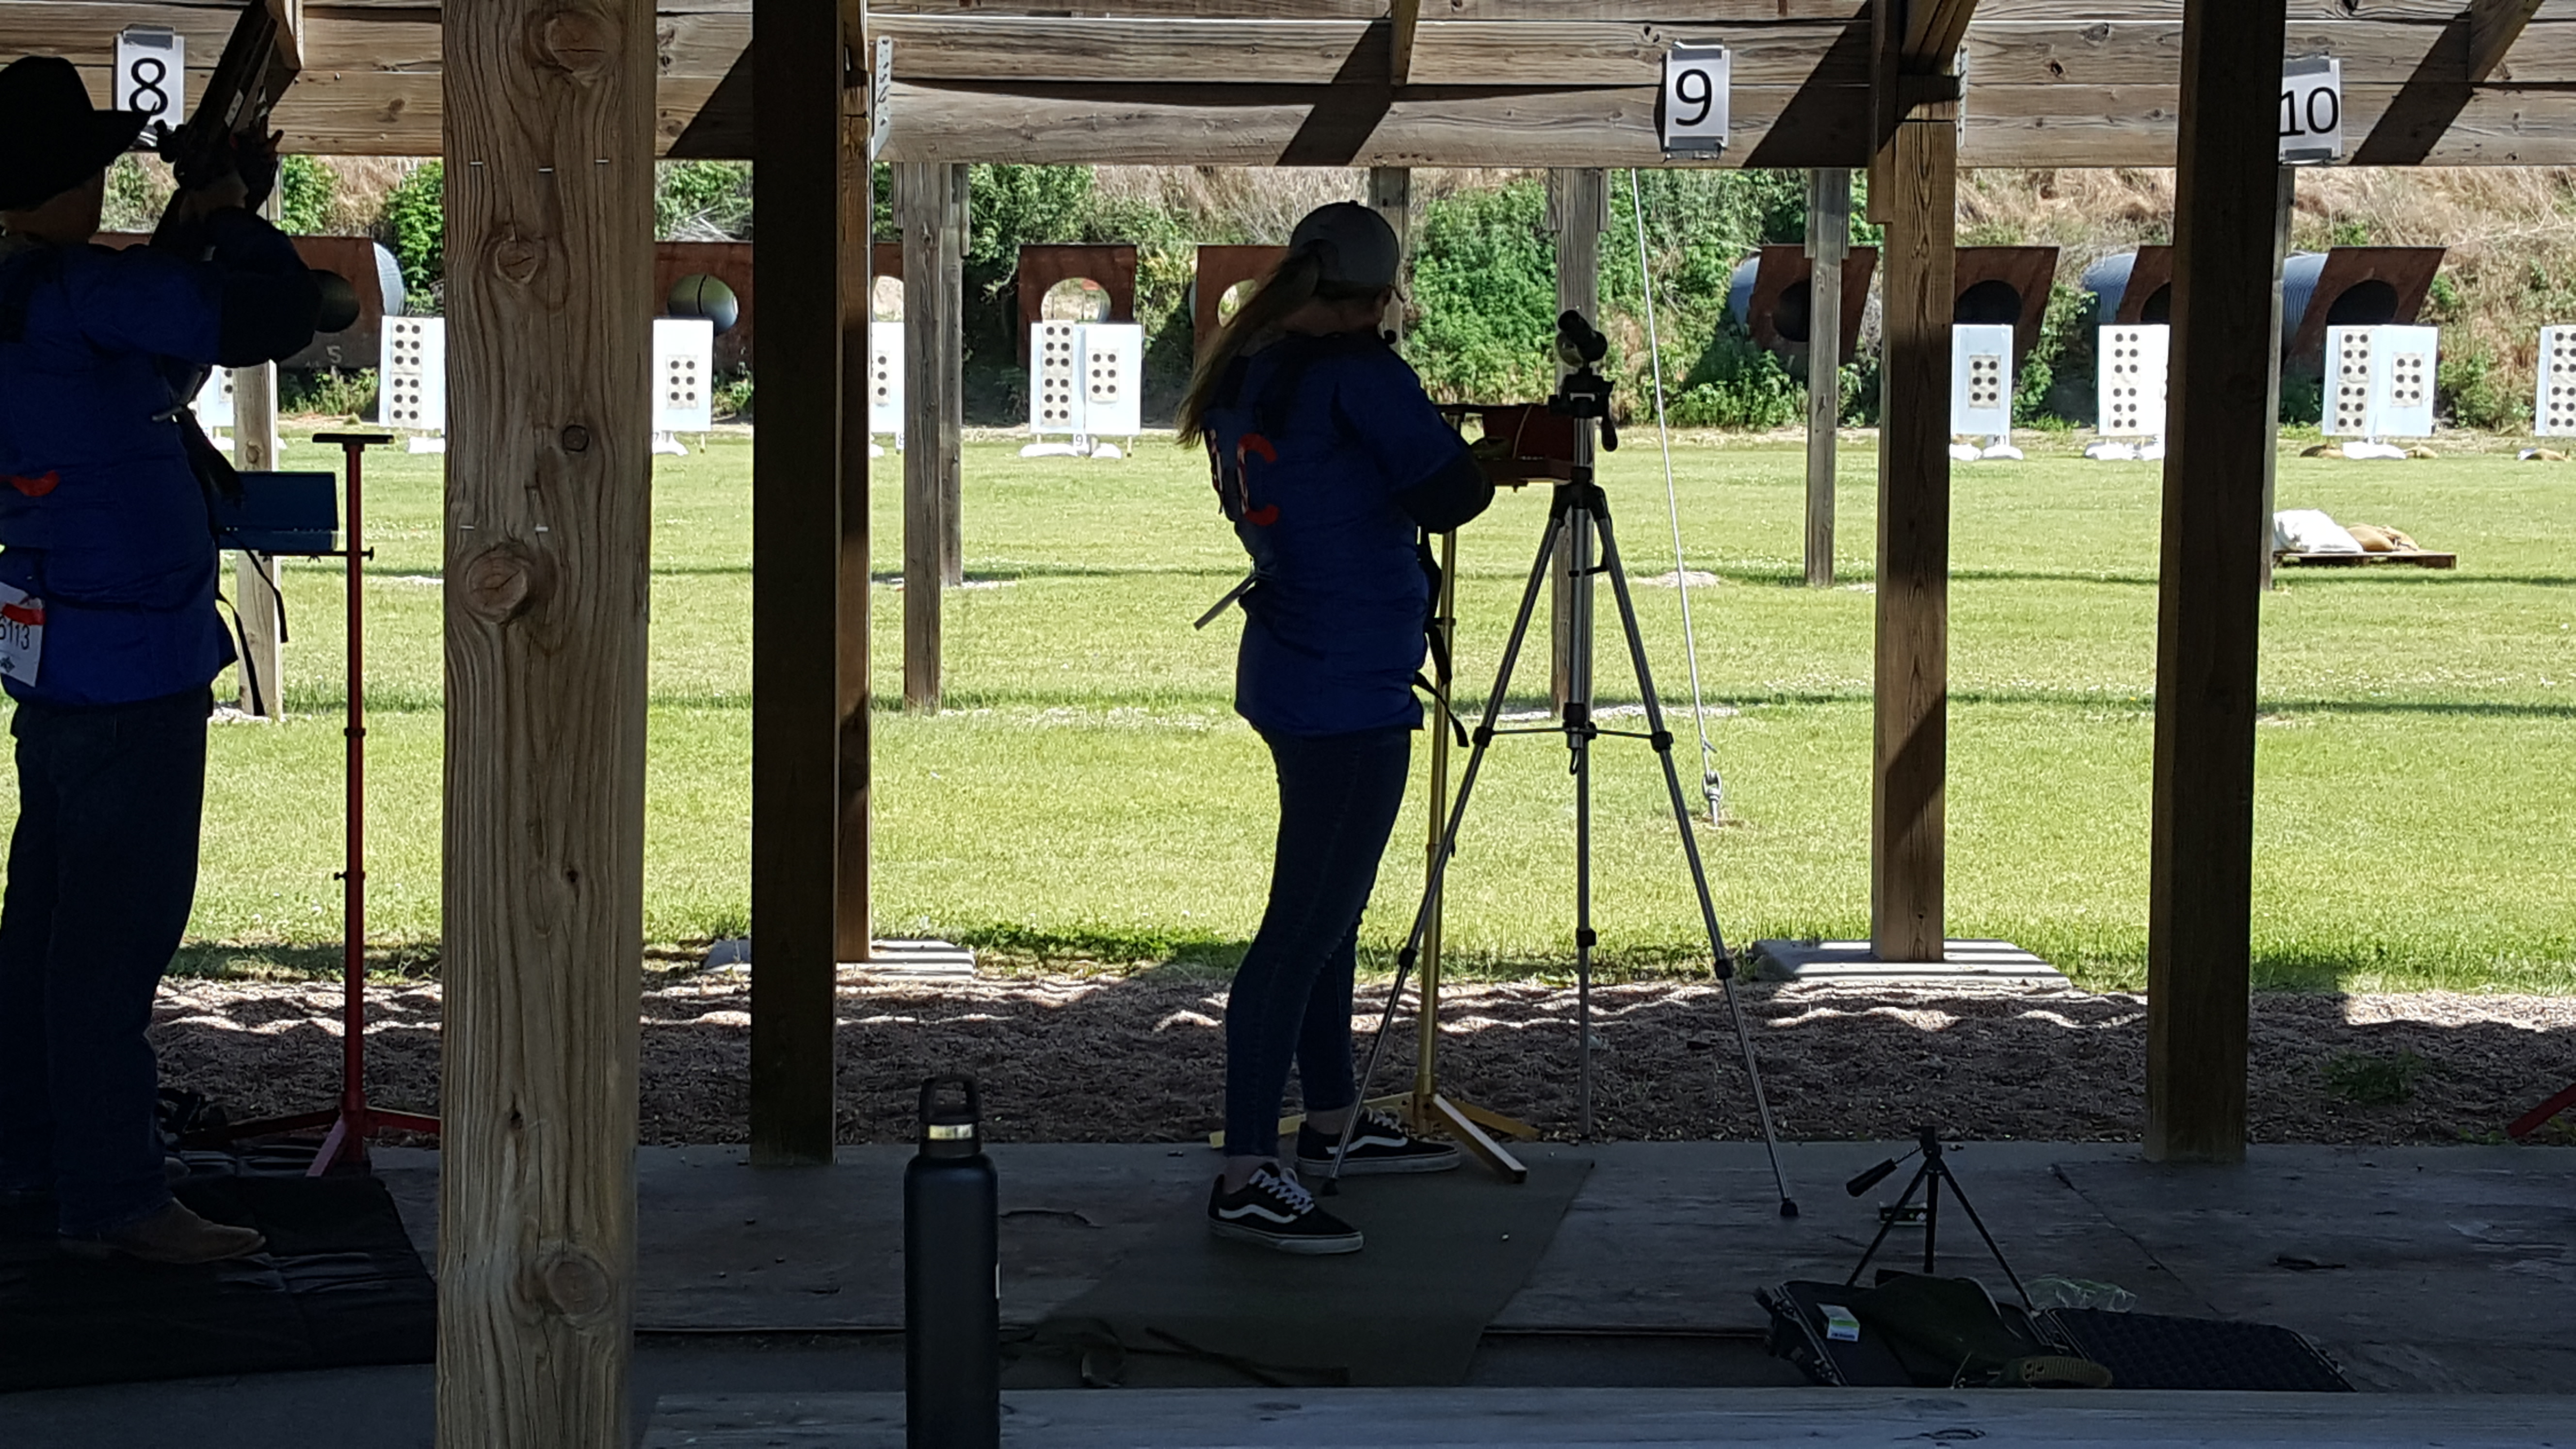 Brenna Steger shooting on the range